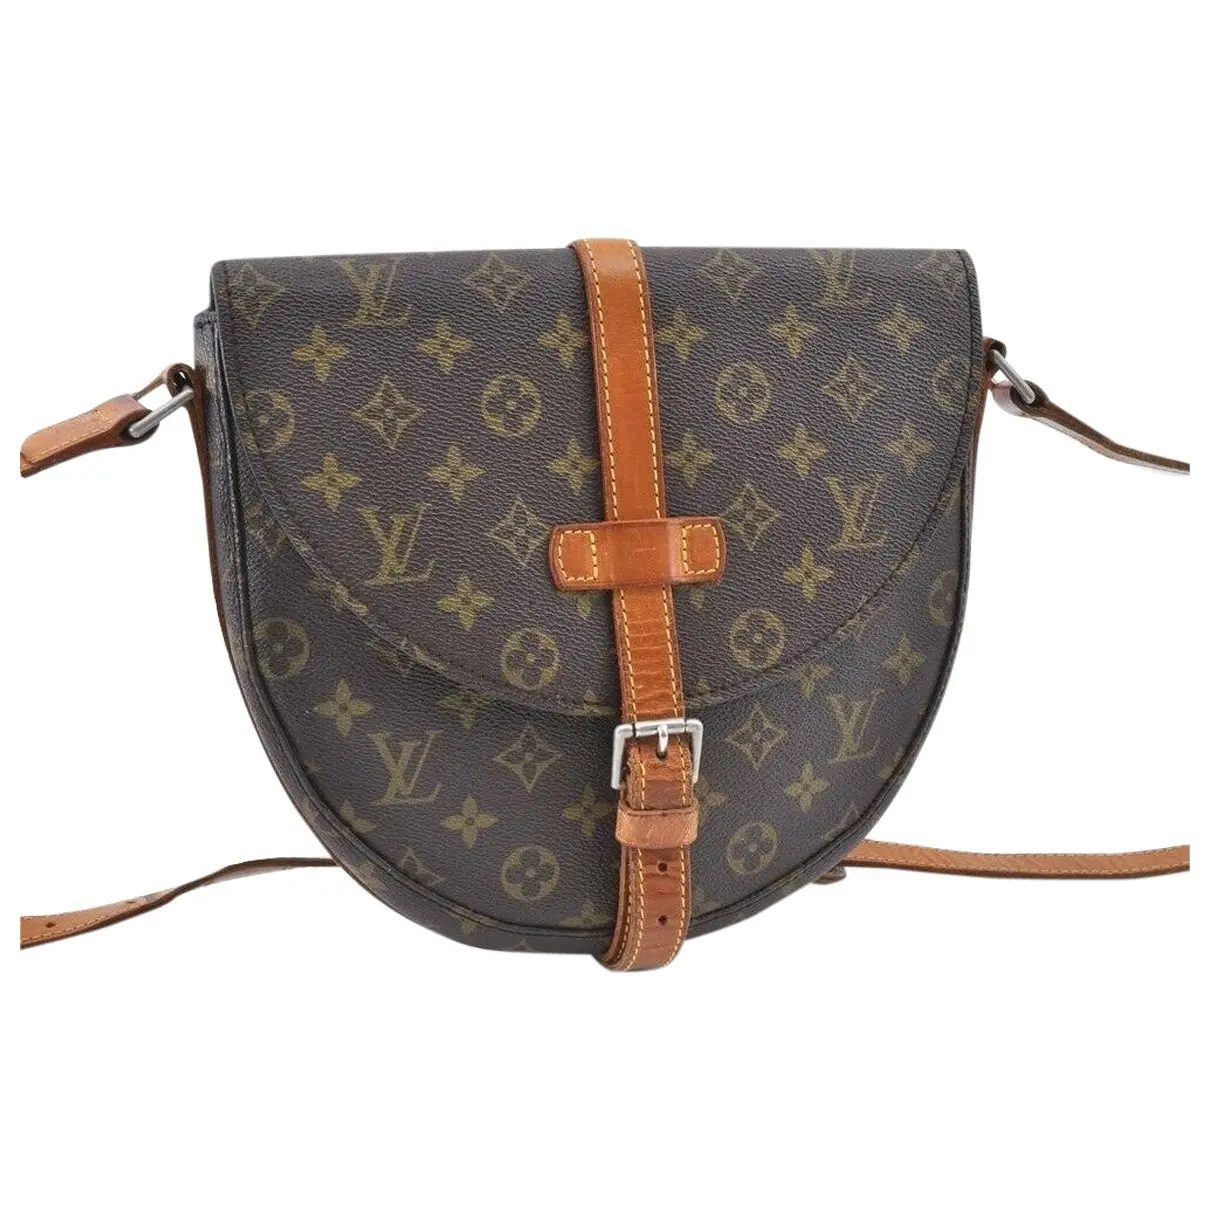 Chantilly cloth handbag Louis Vuitton